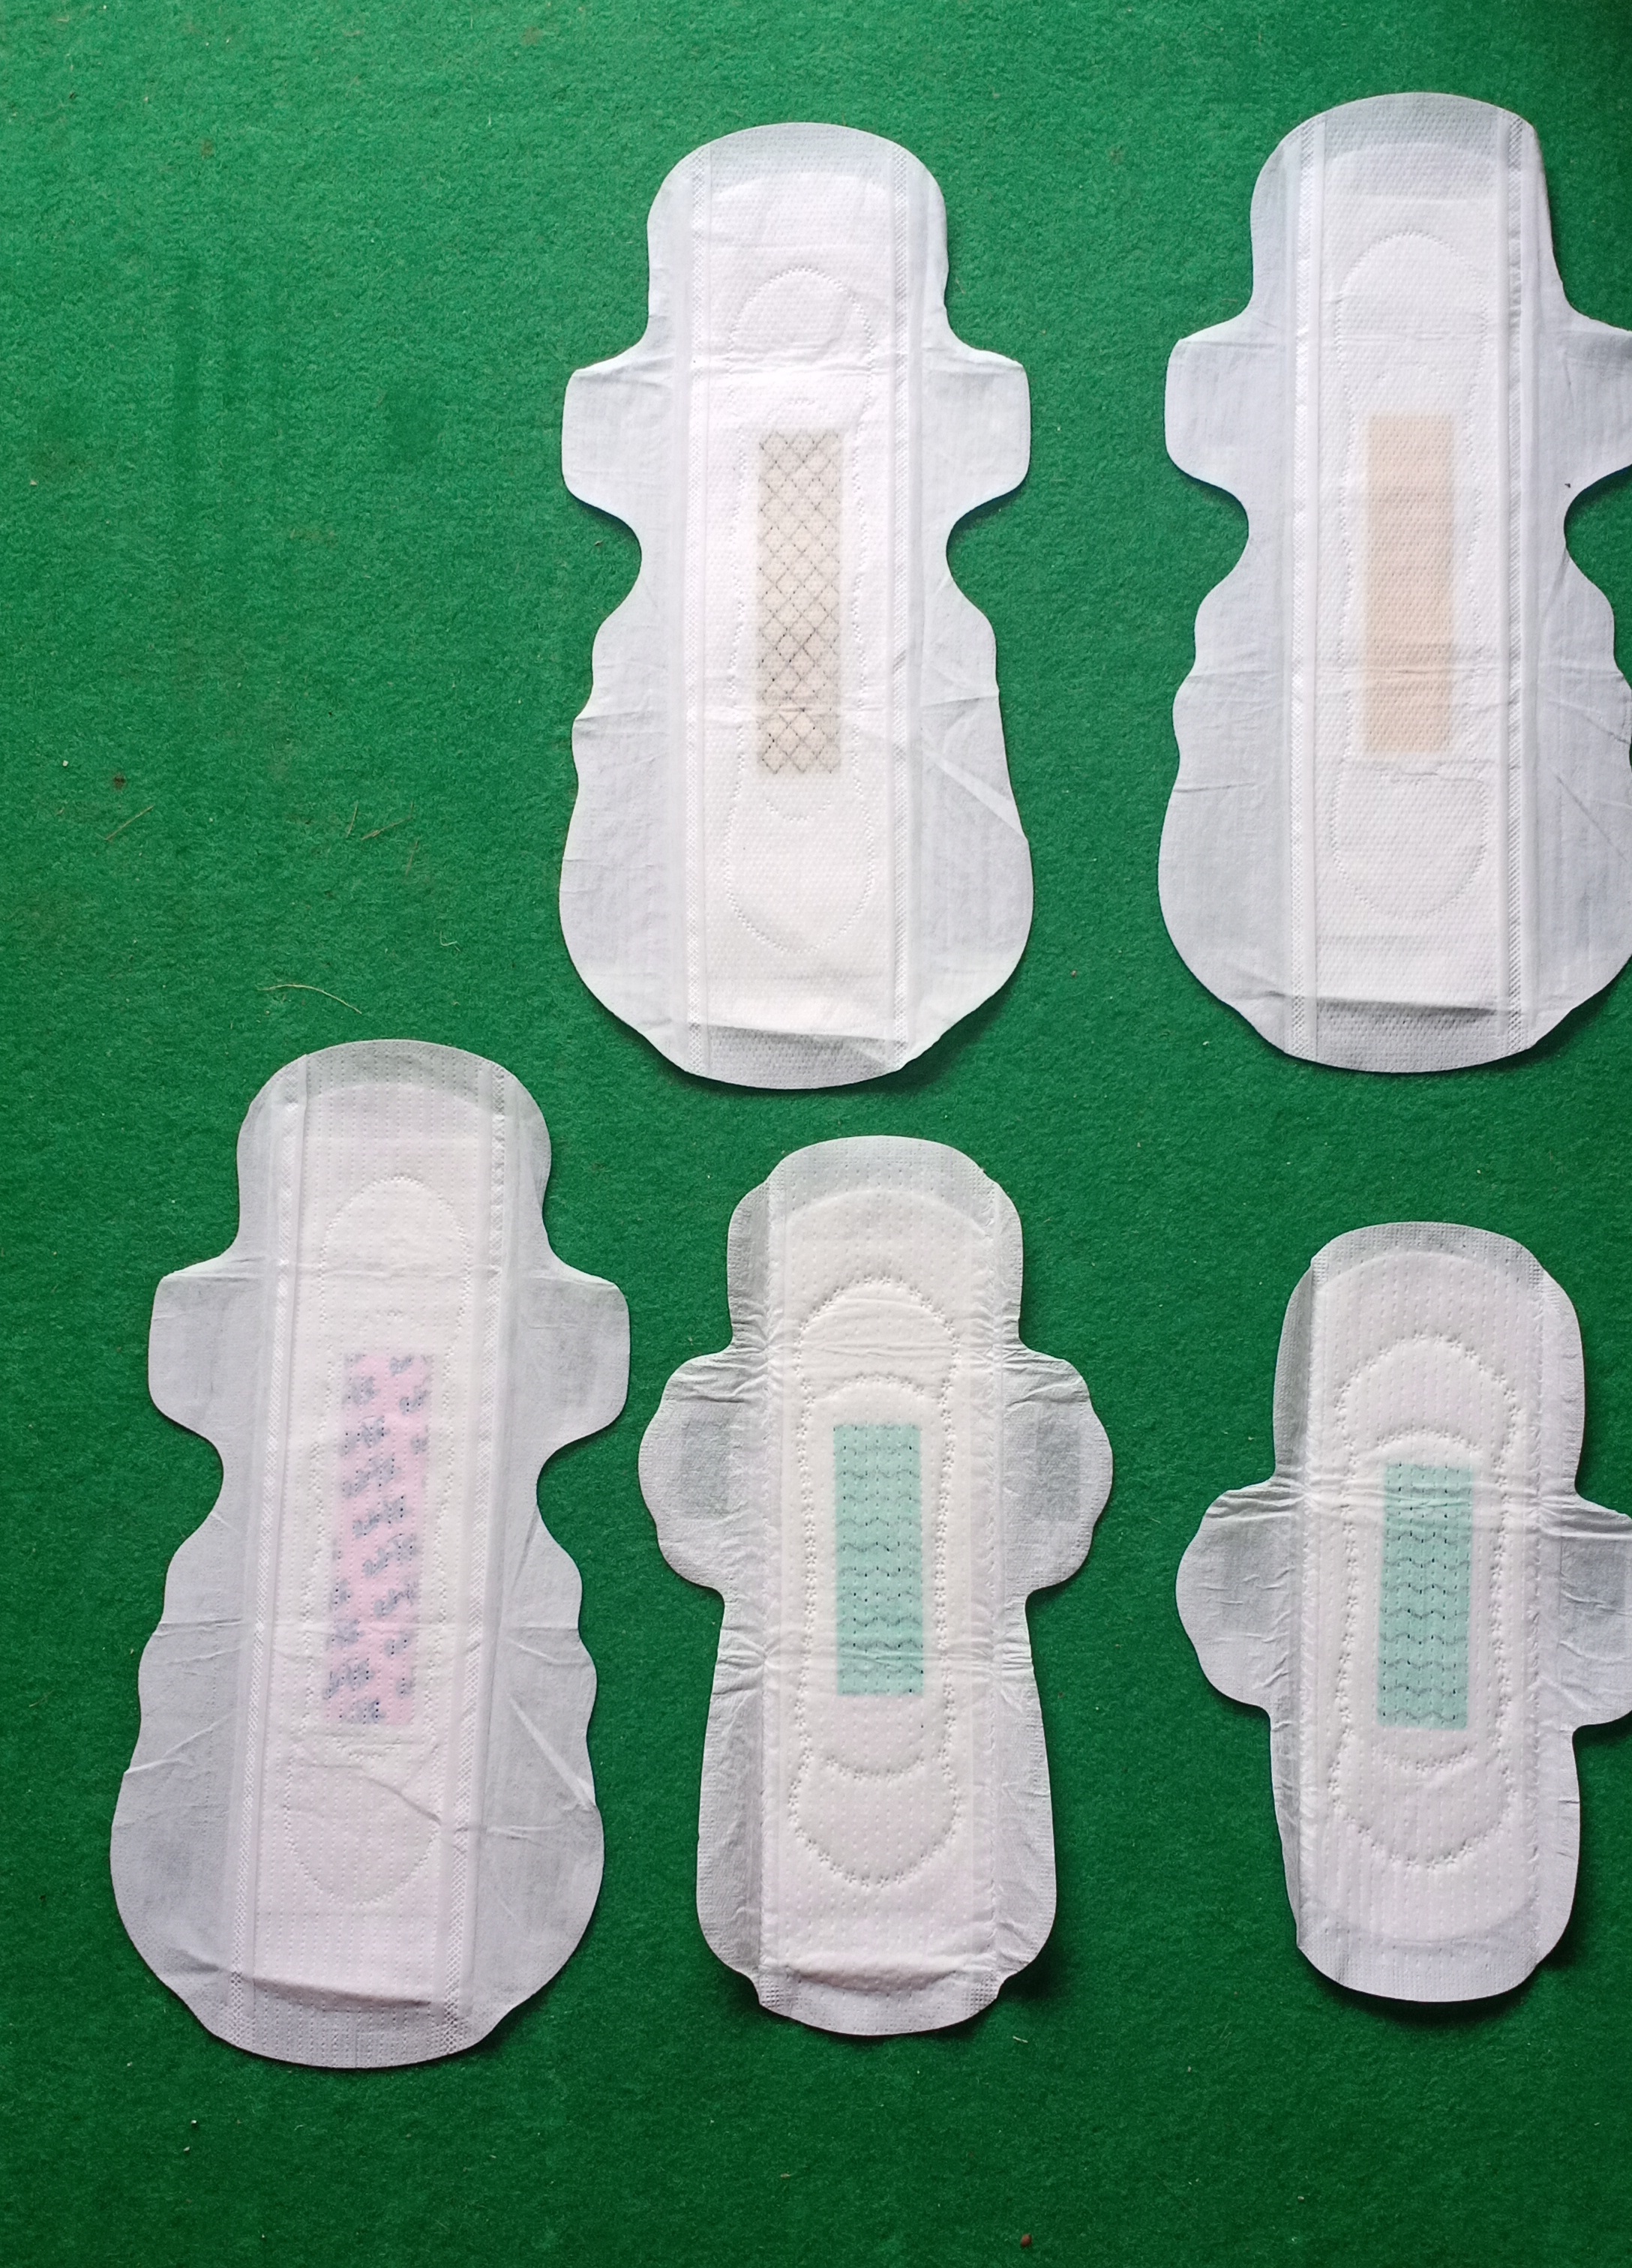 cotton sanitary napkins